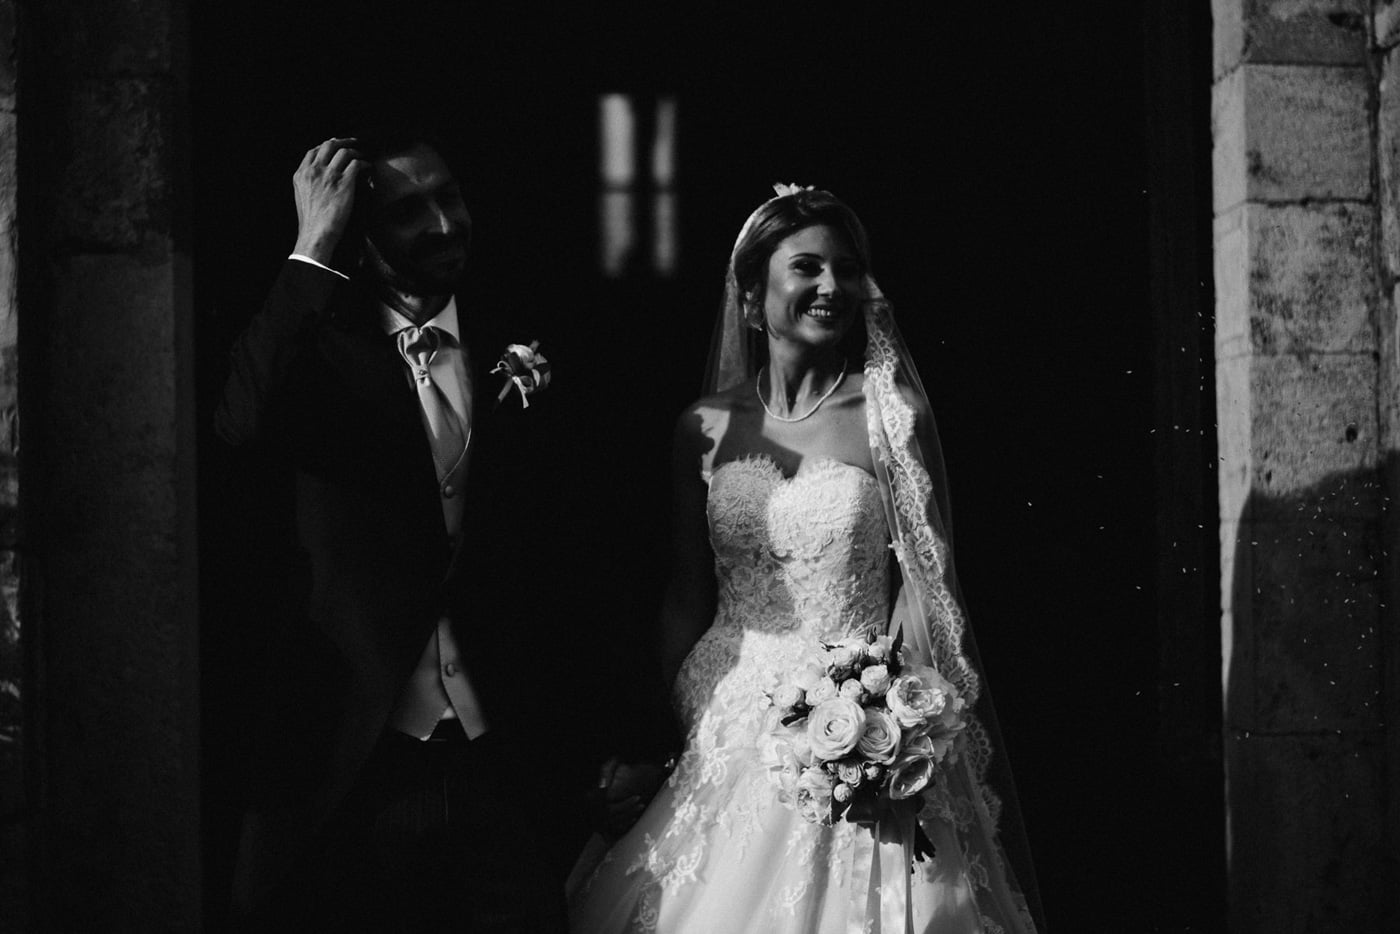 Andrea & Francesca | Wedding at Borgo San Luigi by Federico Pannacci 53